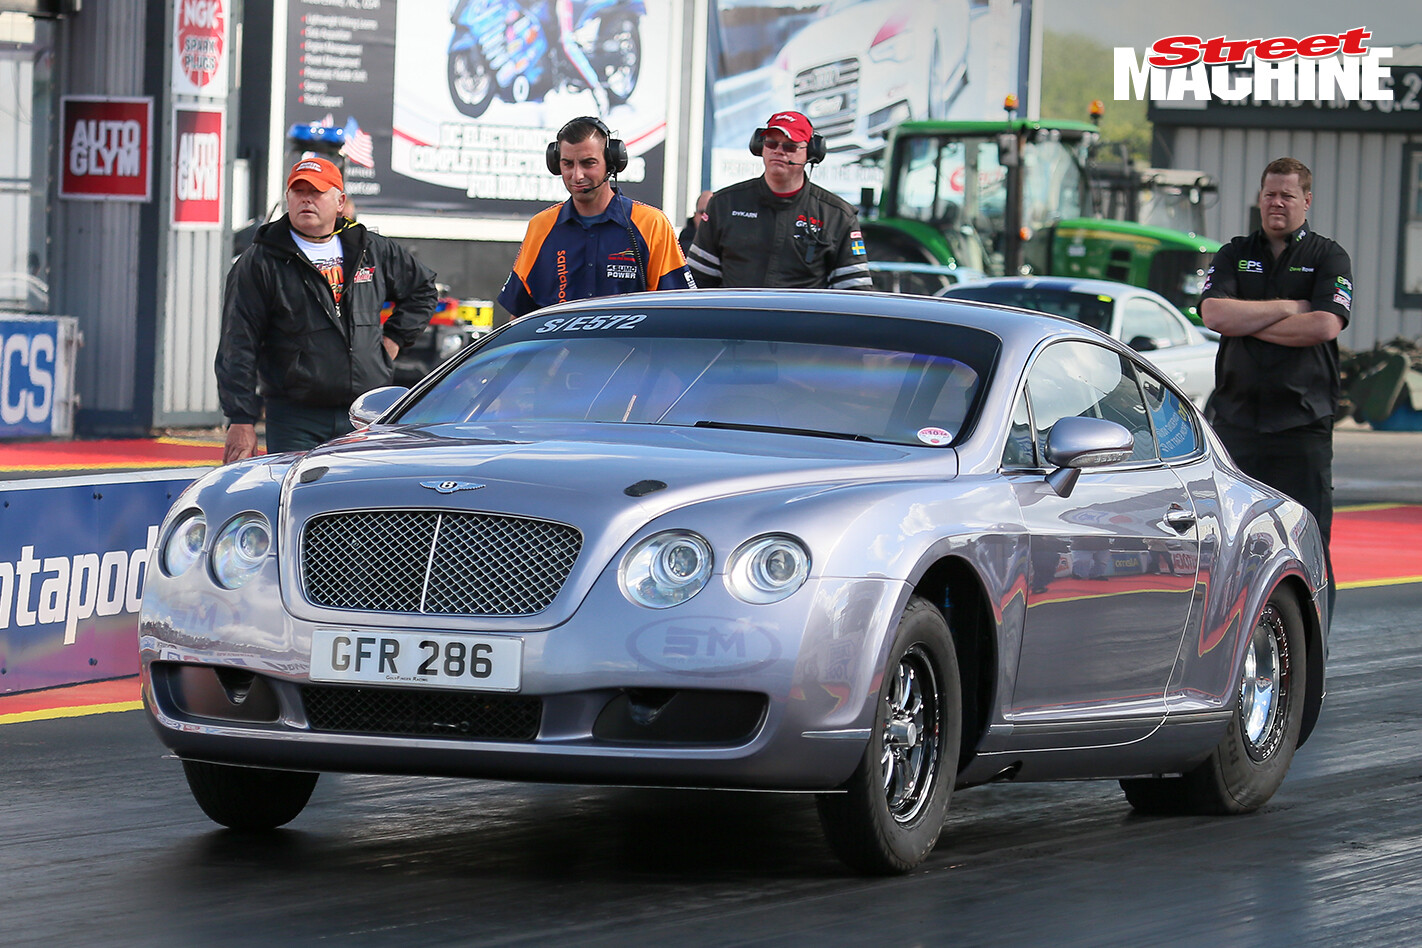 Bentley GT Drag Race Car 13 Nw